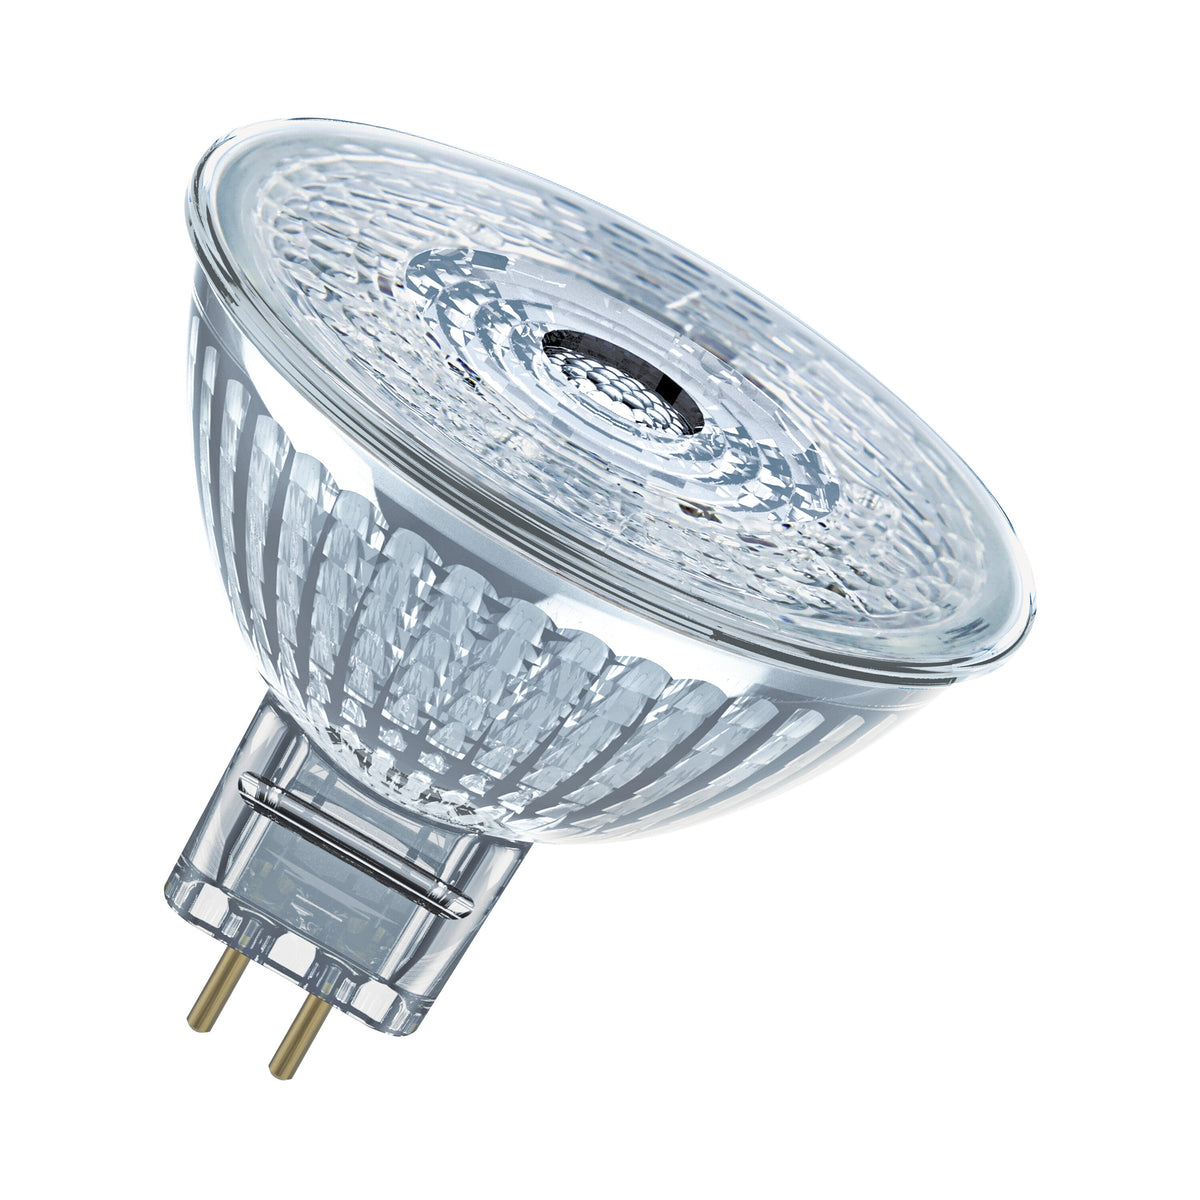 Lampada con riflettore LED OSRAM MR16 con attacco GU5.3, bianco freddo (4000K), spot in vetro, 2,6 W, ricambio per lampada con riflettore da 20 W, LED STAR MR16 12 V